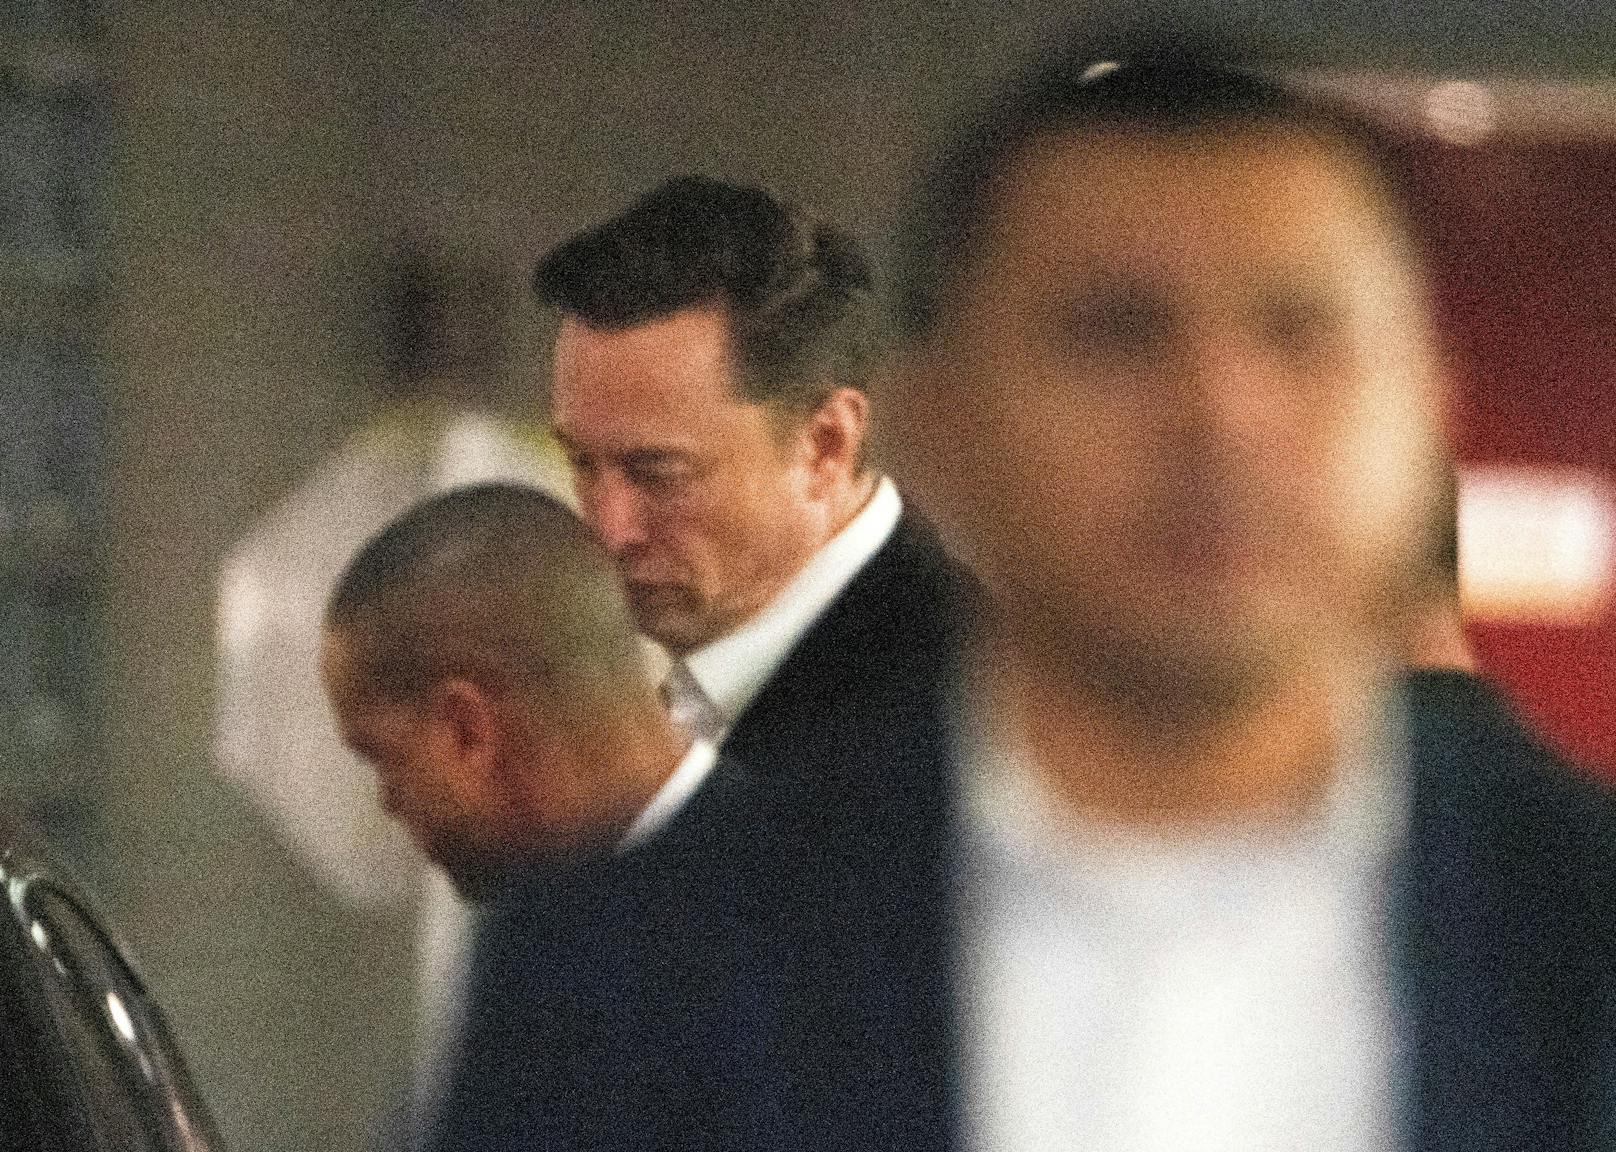 Twitter-Boss Elon Musk sucht mit einem Video nach einem "verrückten Stalker".